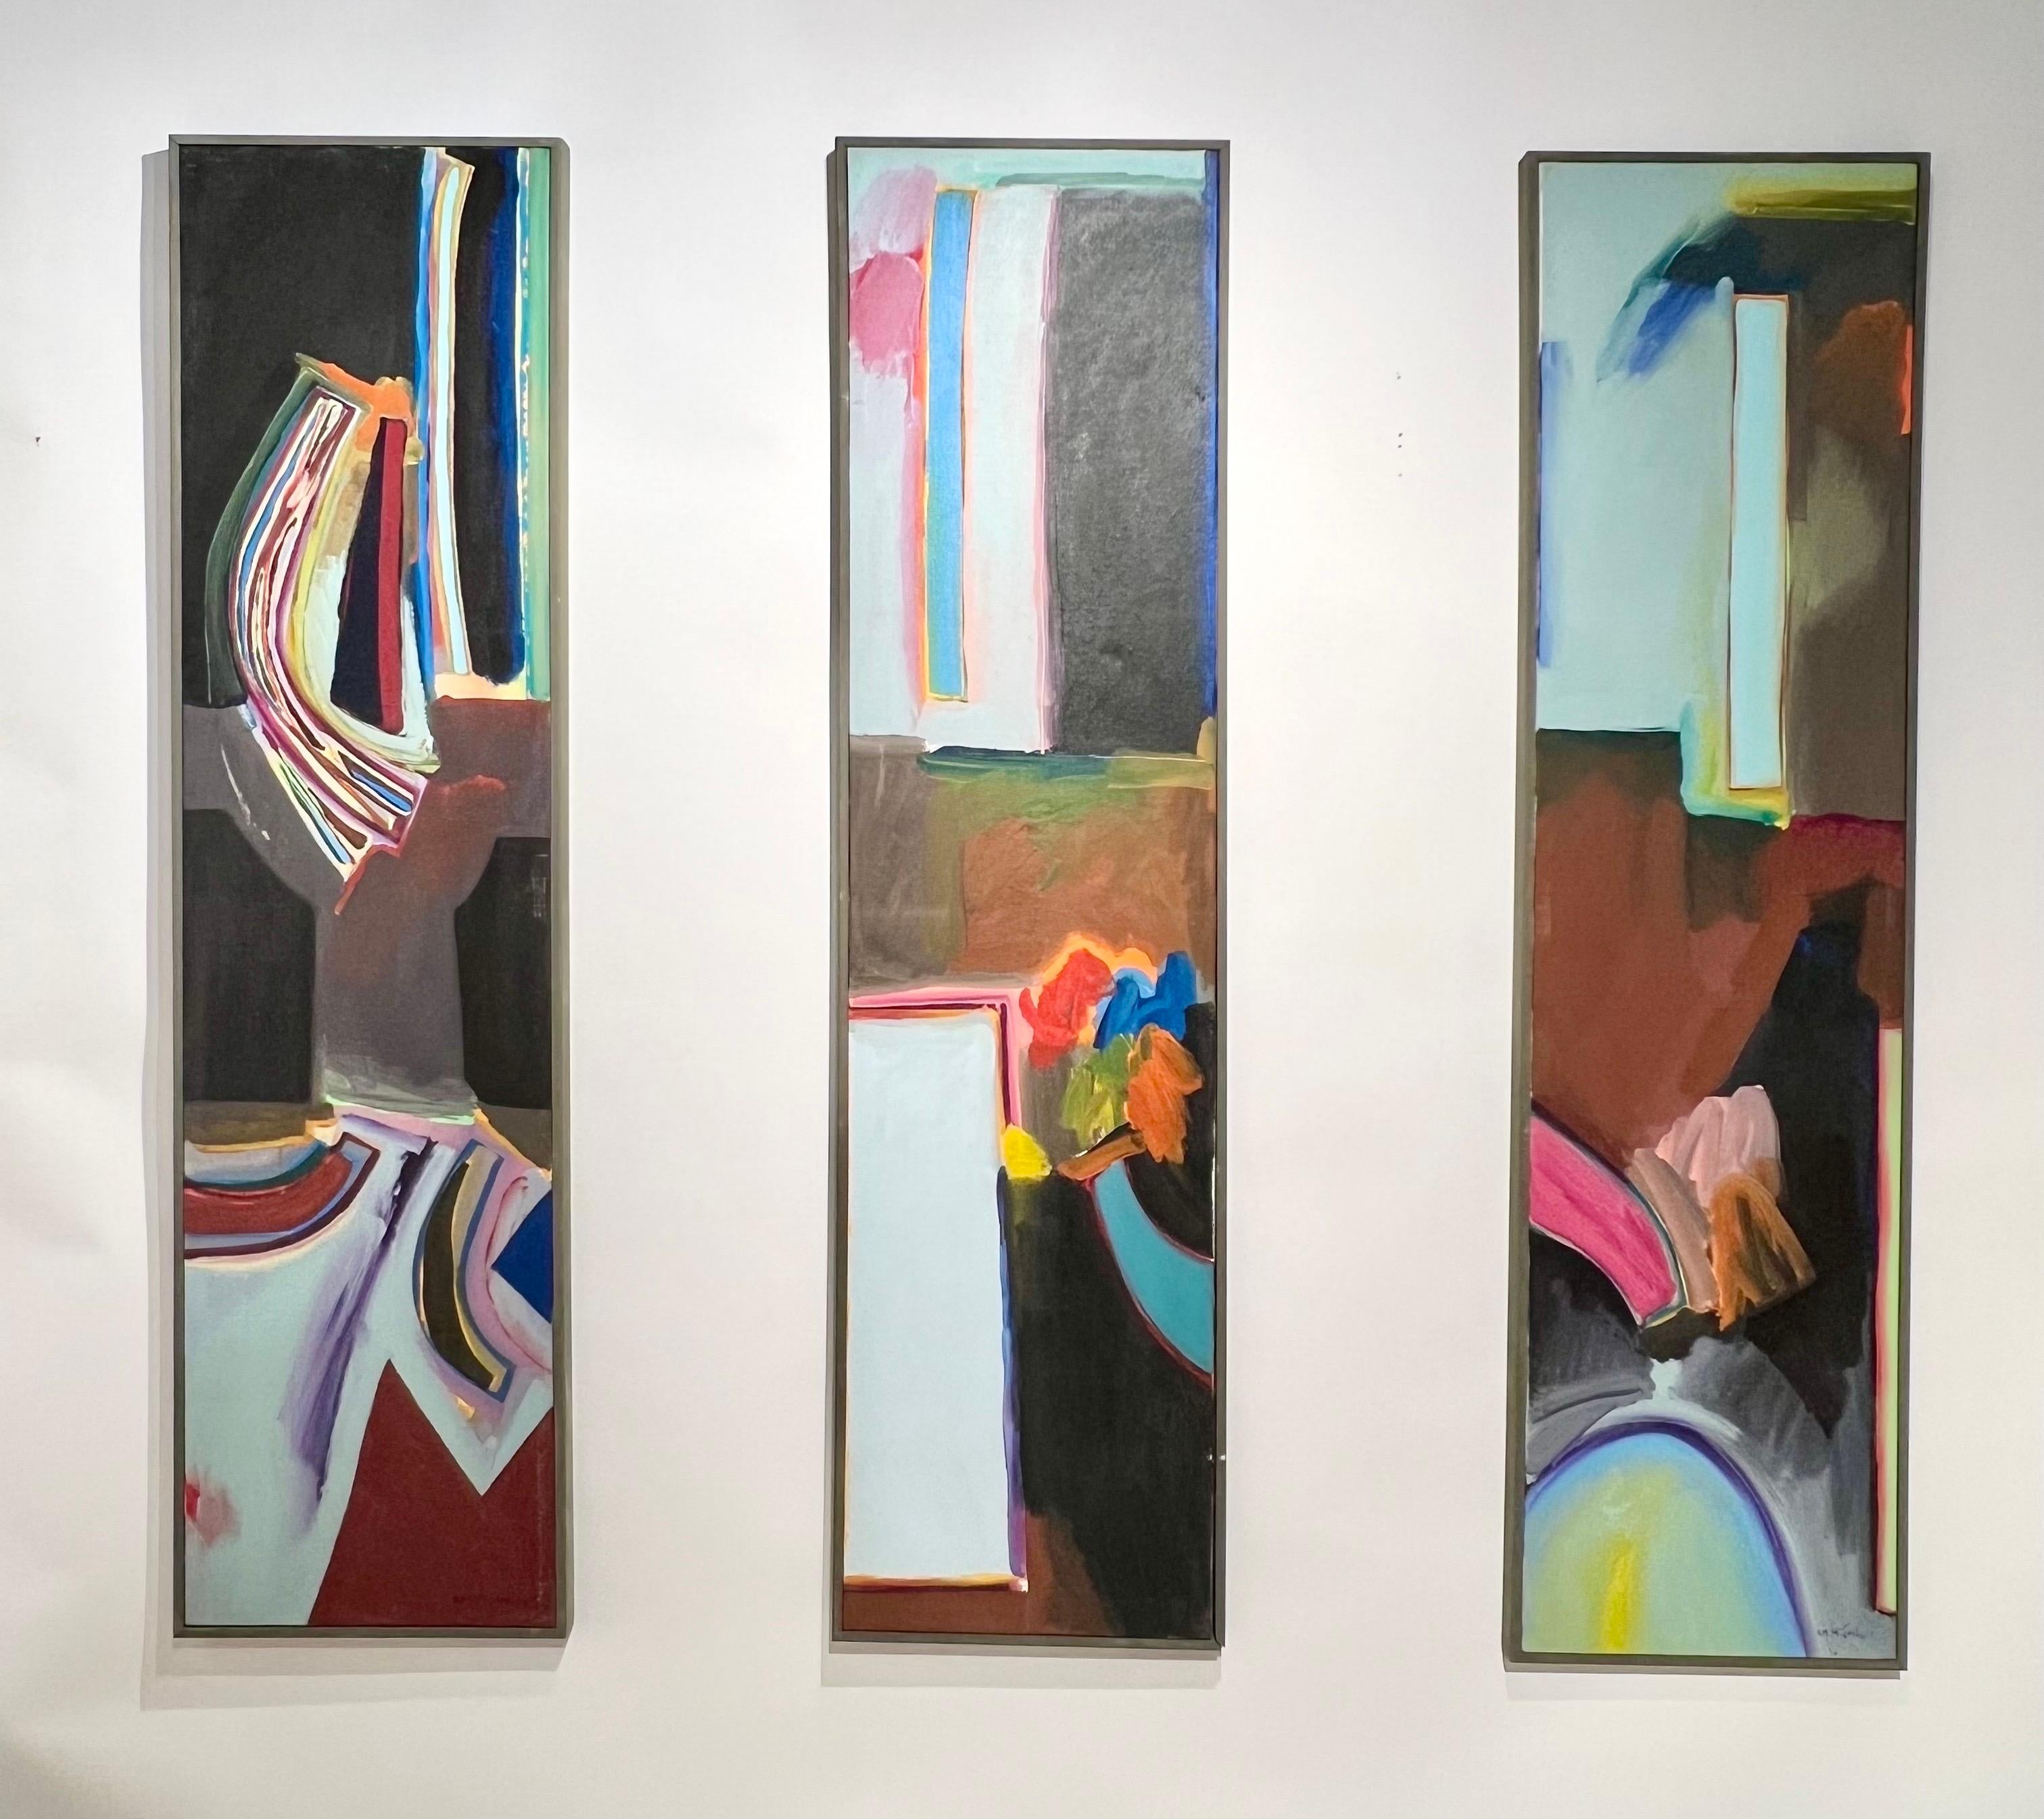 Incroyable triptyque d'huiles abstraites sur toile de l'artiste américain Harley Francis c1979. Elles peuvent être disposées dans n'importe quel ordre. Les trois pièces sont signées. 

Artistics (1940-2017) était un artiste incroyablement